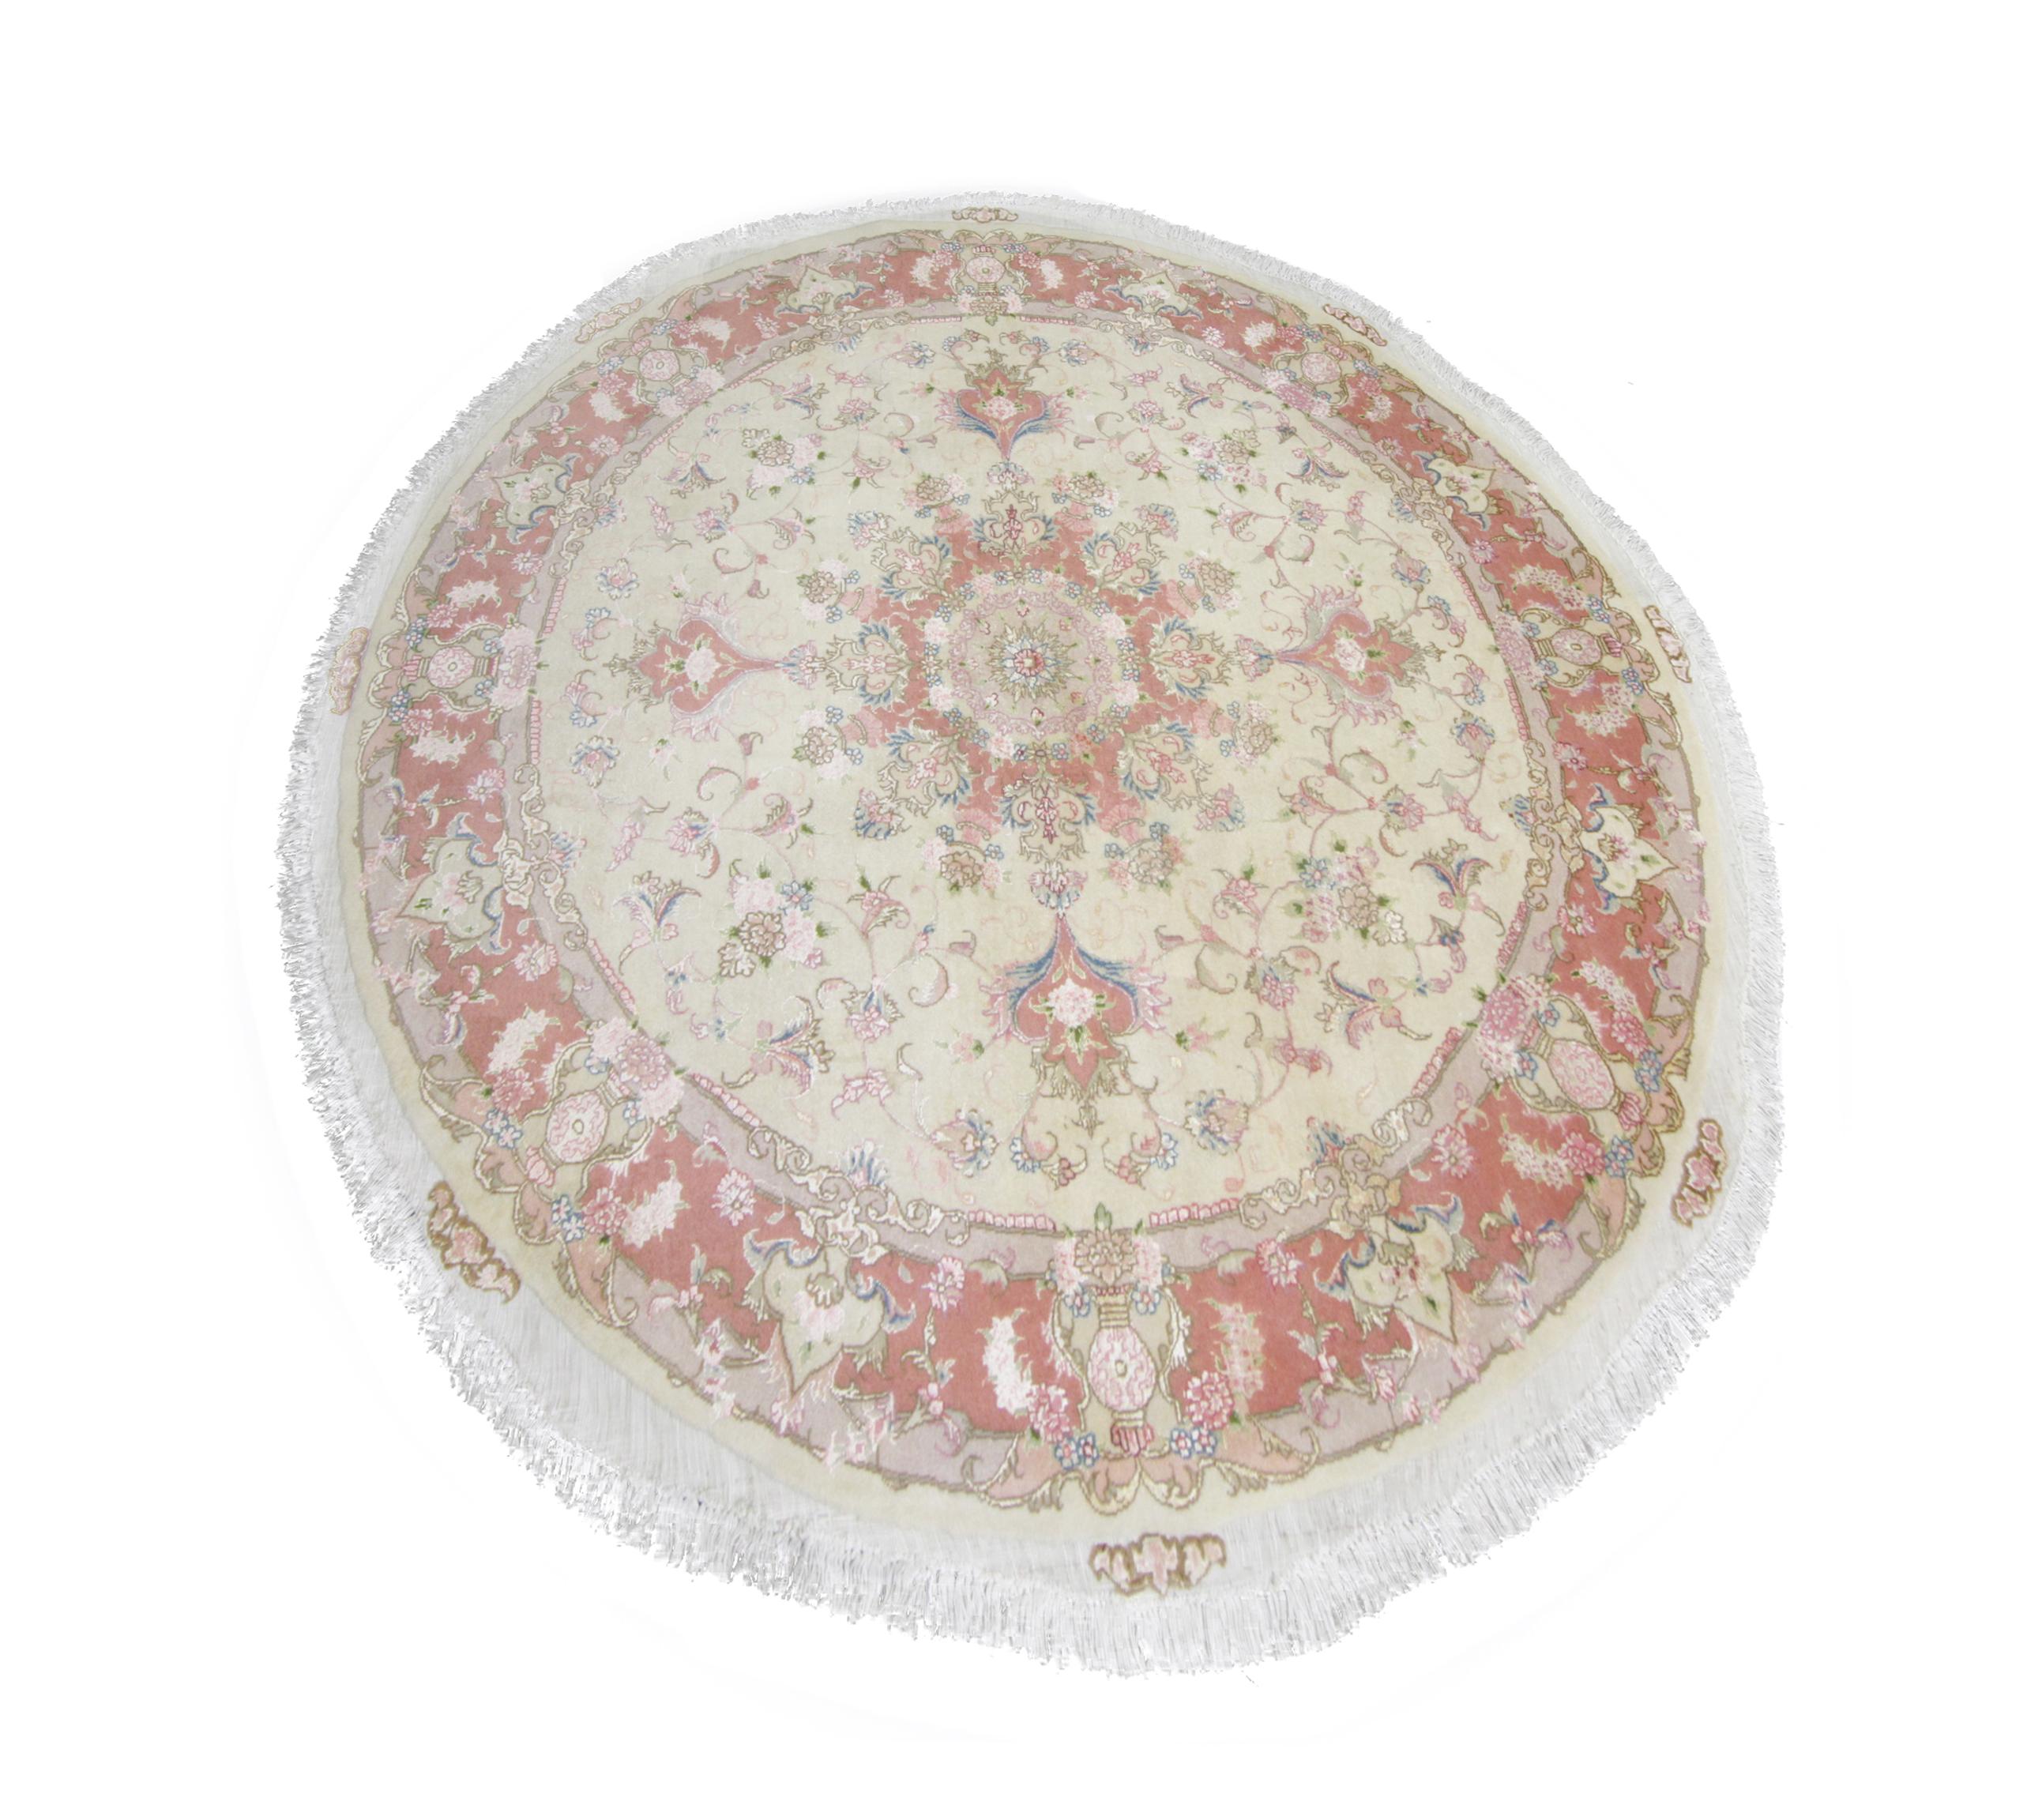 Dieser kleine runde Wollteppich wurde in den 2000er Jahren in der Türkei aus feinen organischen Seiden- und Wollmaterialien gewebt. Das Design zeigt einen cremefarbenen Hintergrund mit rosa, elfenbeinfarbenen, blauen und grünen Akzenten, die das